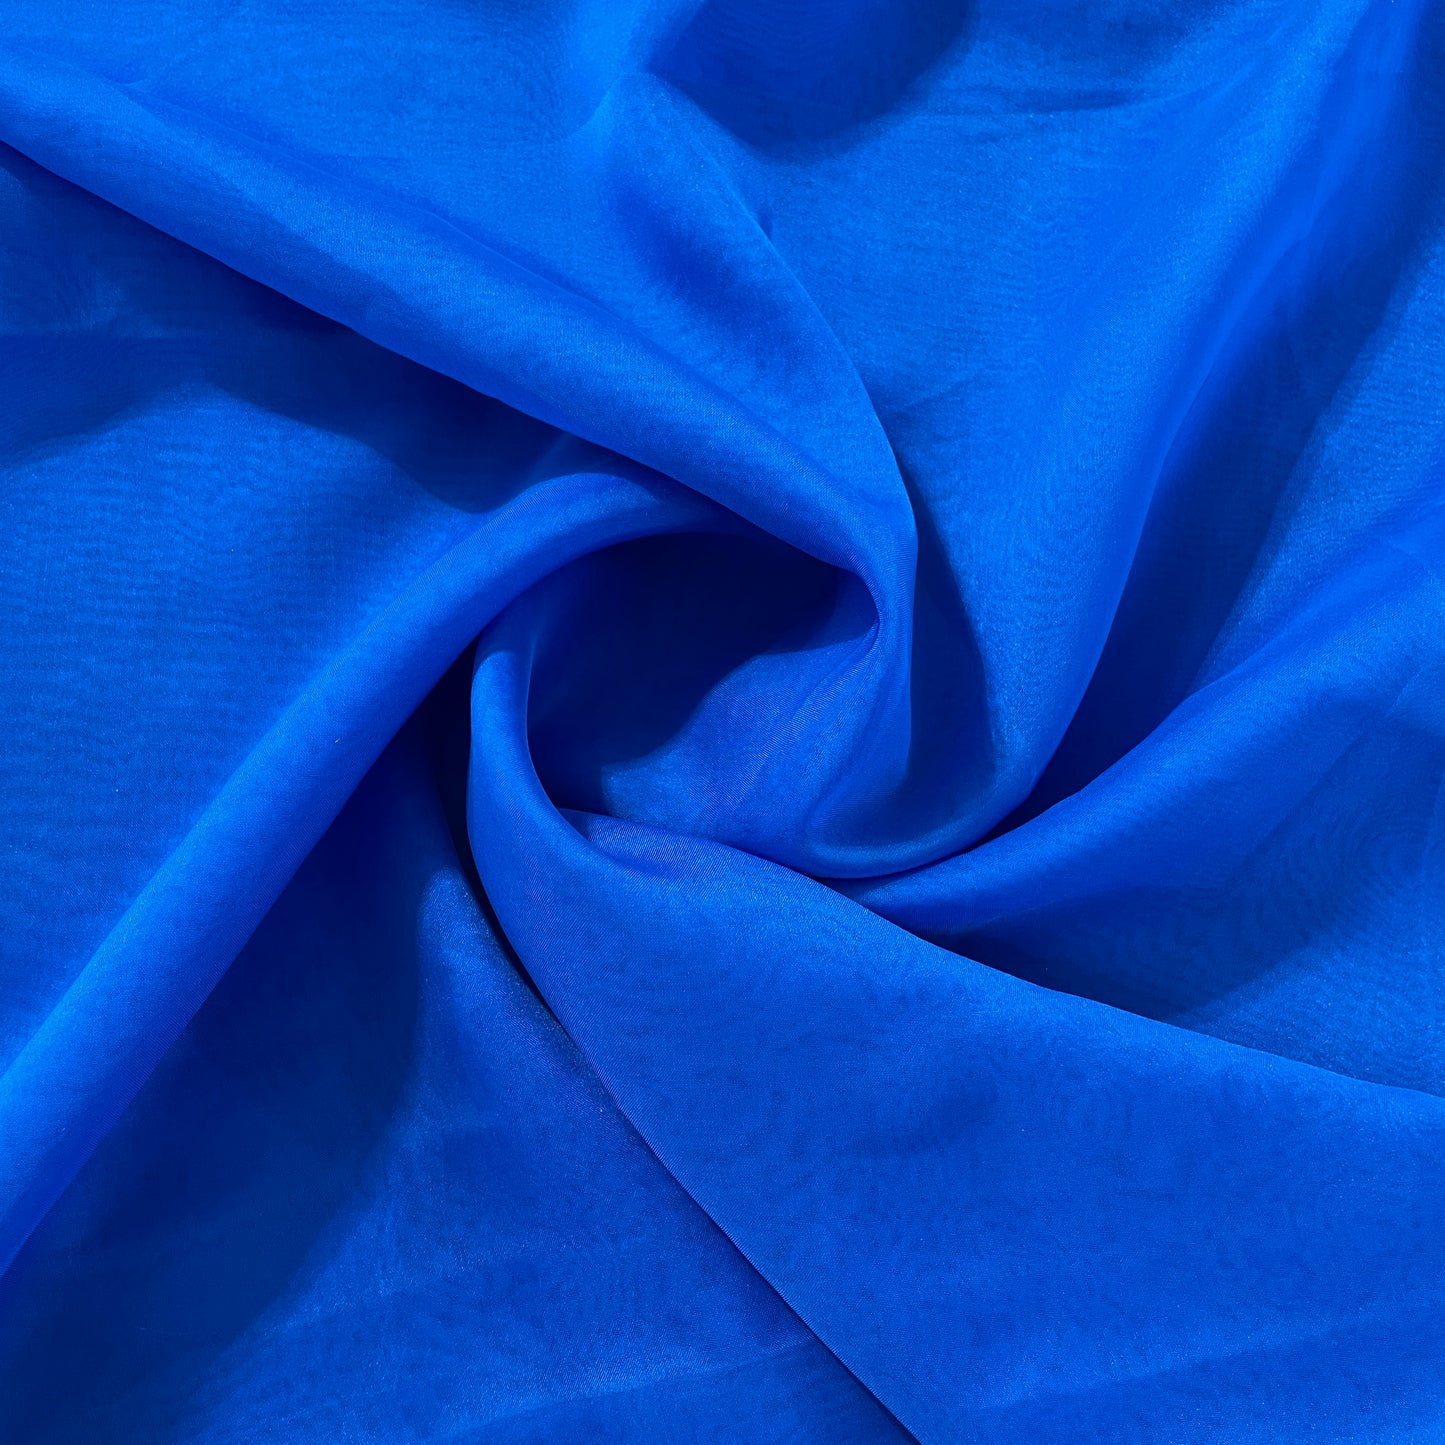 Exclusive Royal Blue Solid Organza Fabric